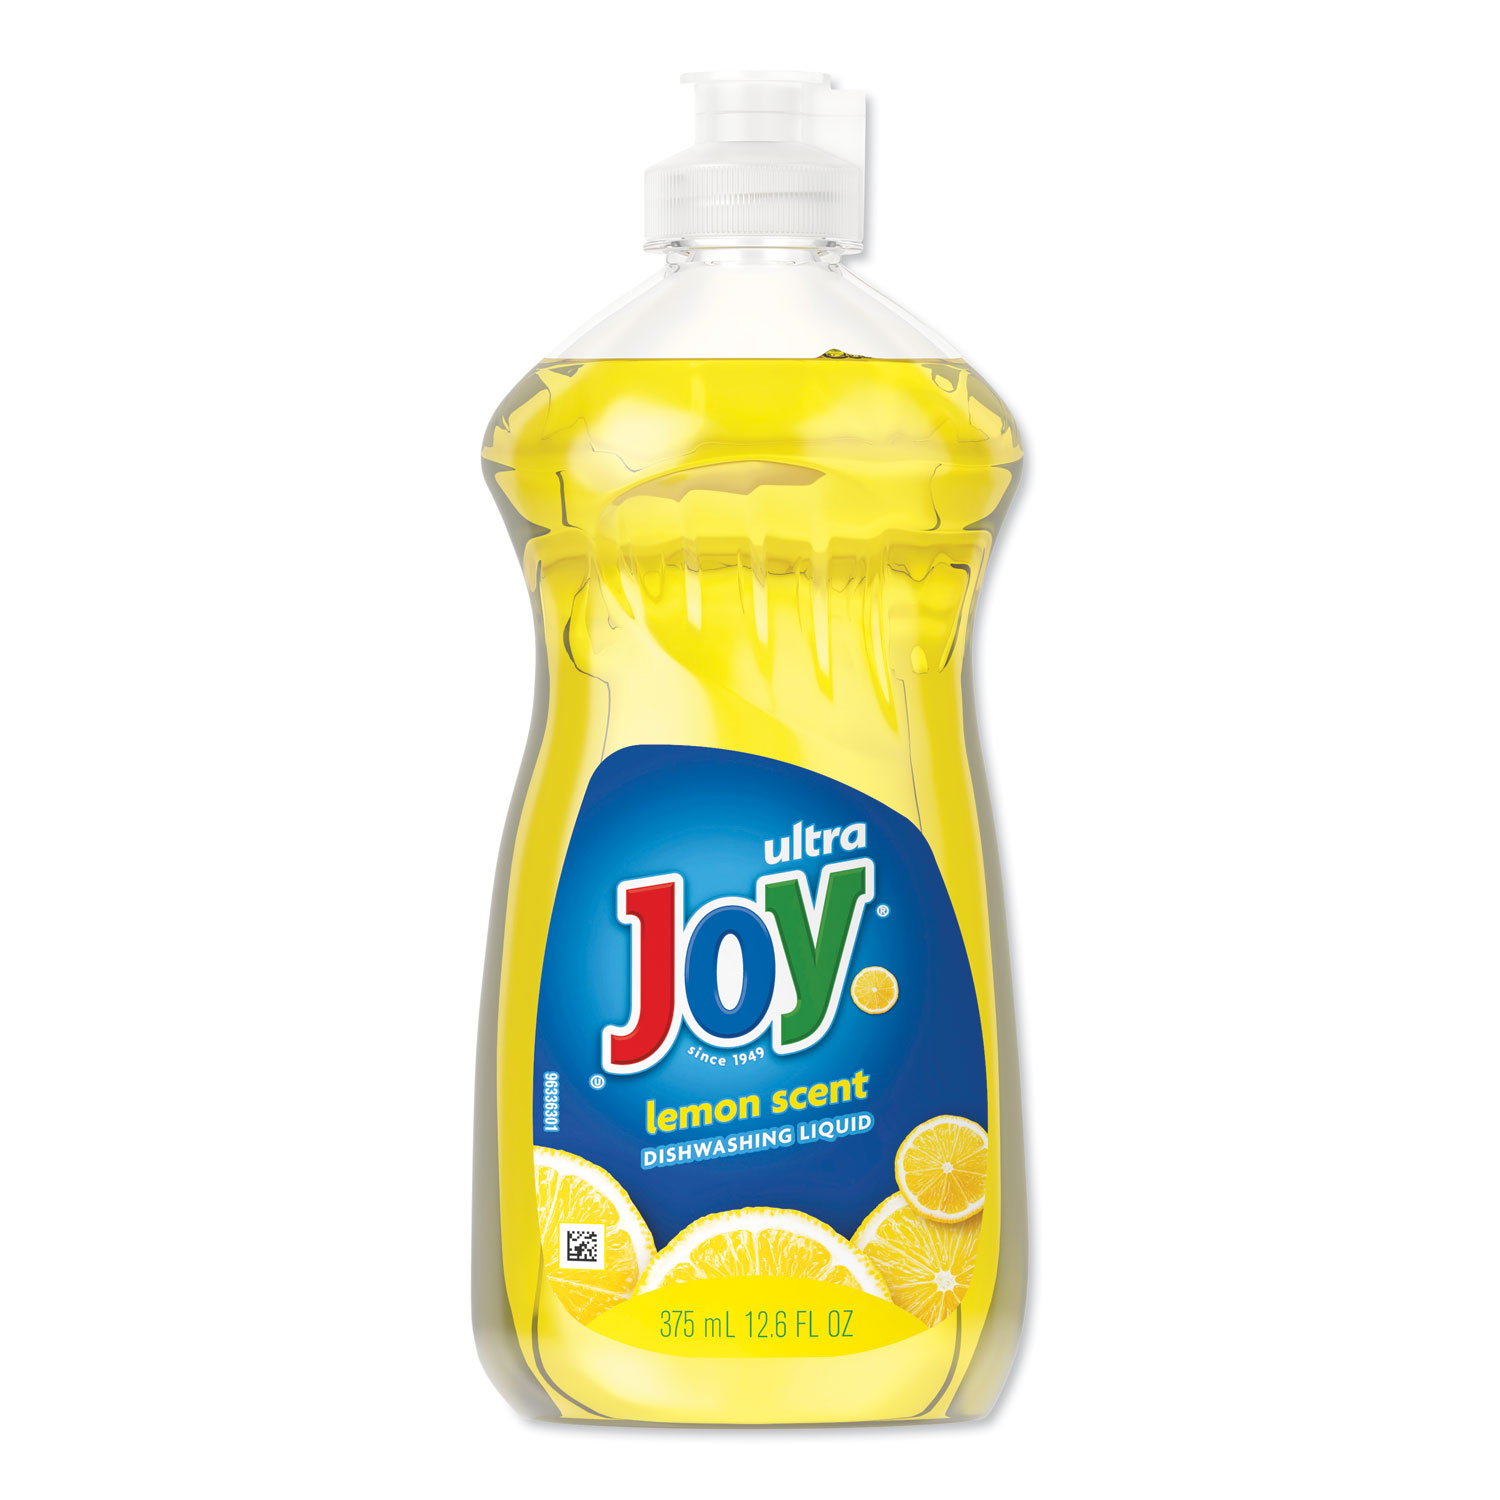 Dishwashing Liquid, Lemon Scent, 12.6 oz Bottle